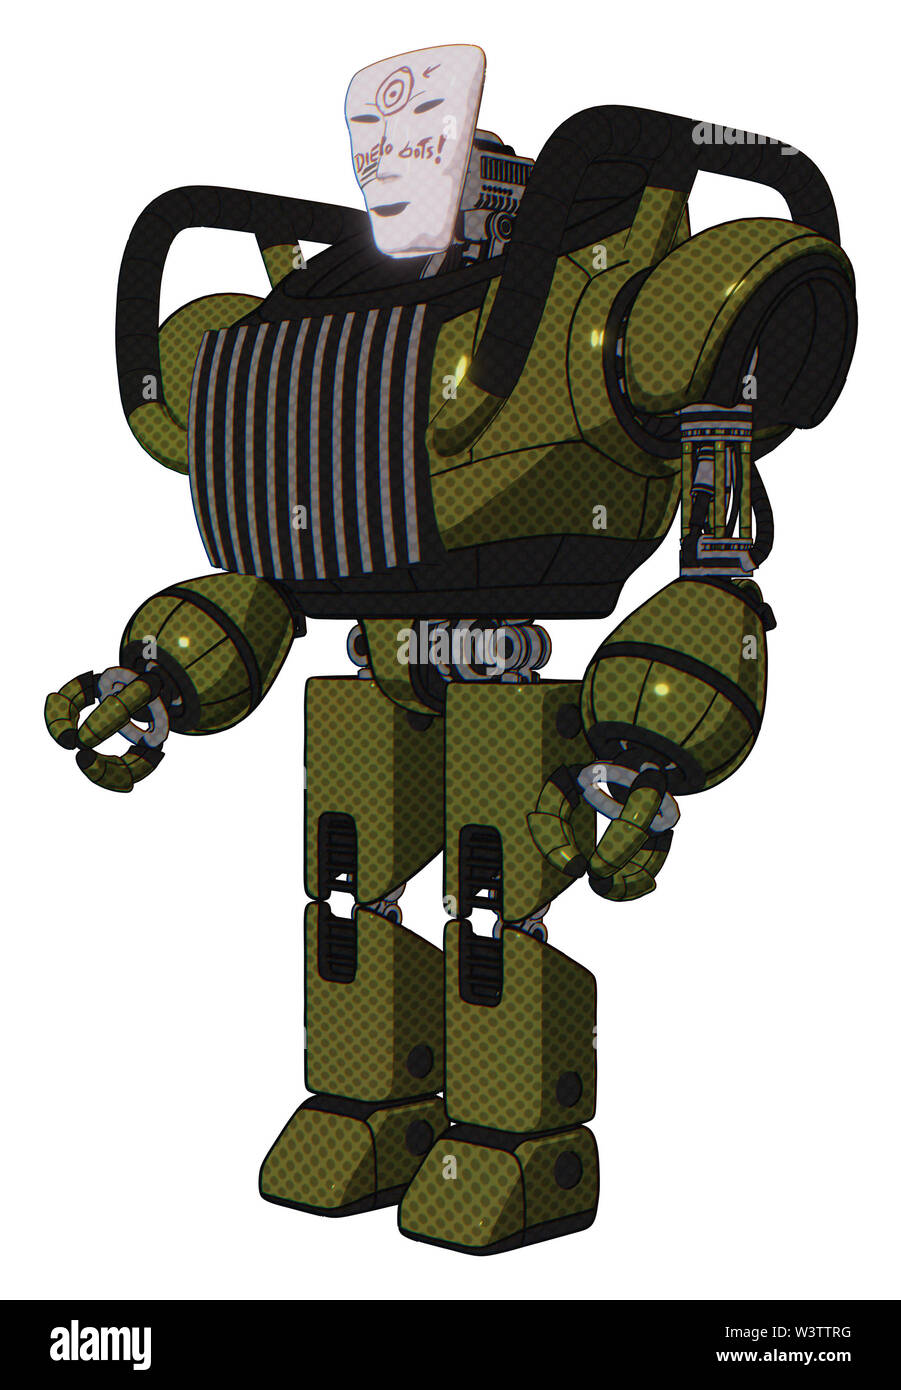 Bot contenente elementi: humanoid maschera facciale, die robot design graffiti, pesante nella parte superiore del torace, torace aeratori, prototipo exoplate gambe. Materiale: esercito... Foto Stock